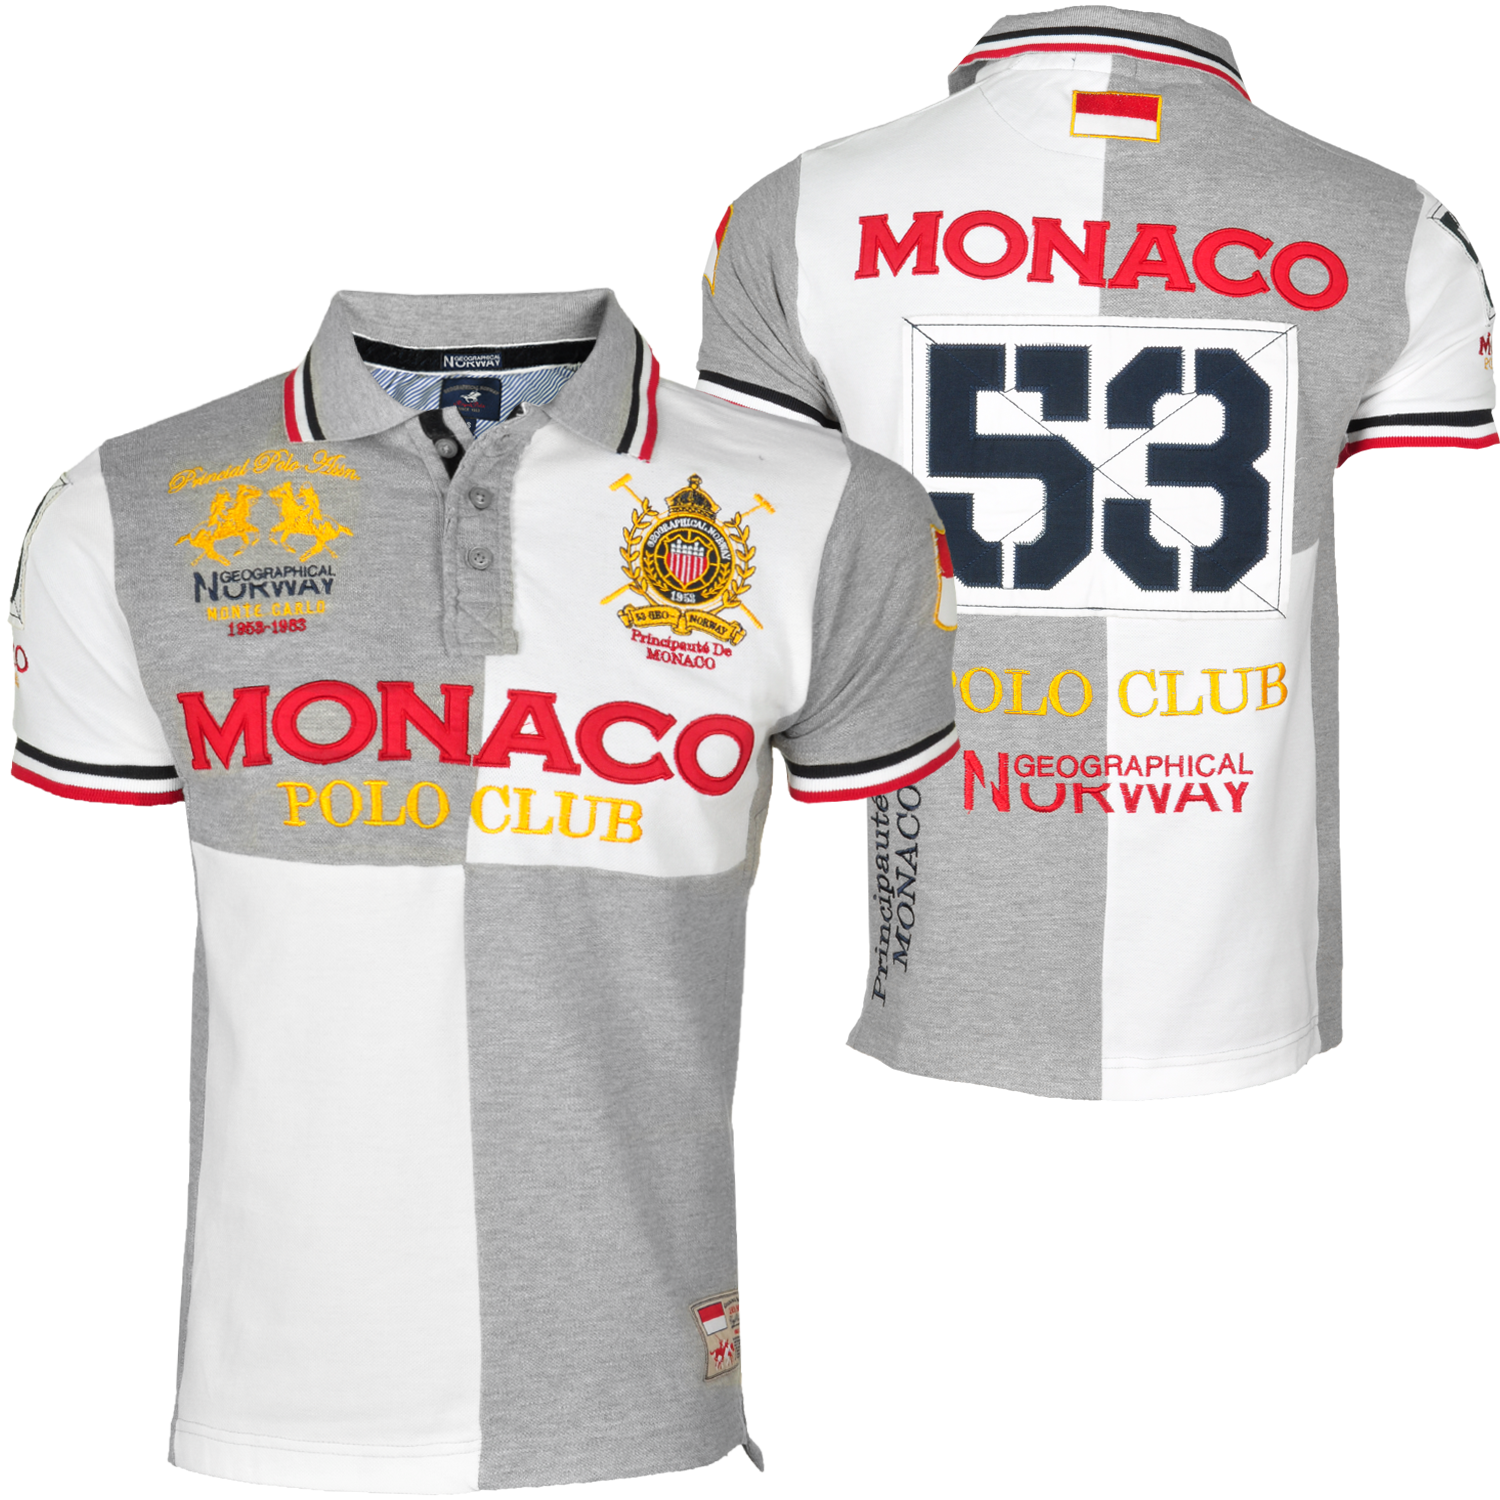 Foto Geographical Norway Monaco Polo Club Camiseta Polo Gris